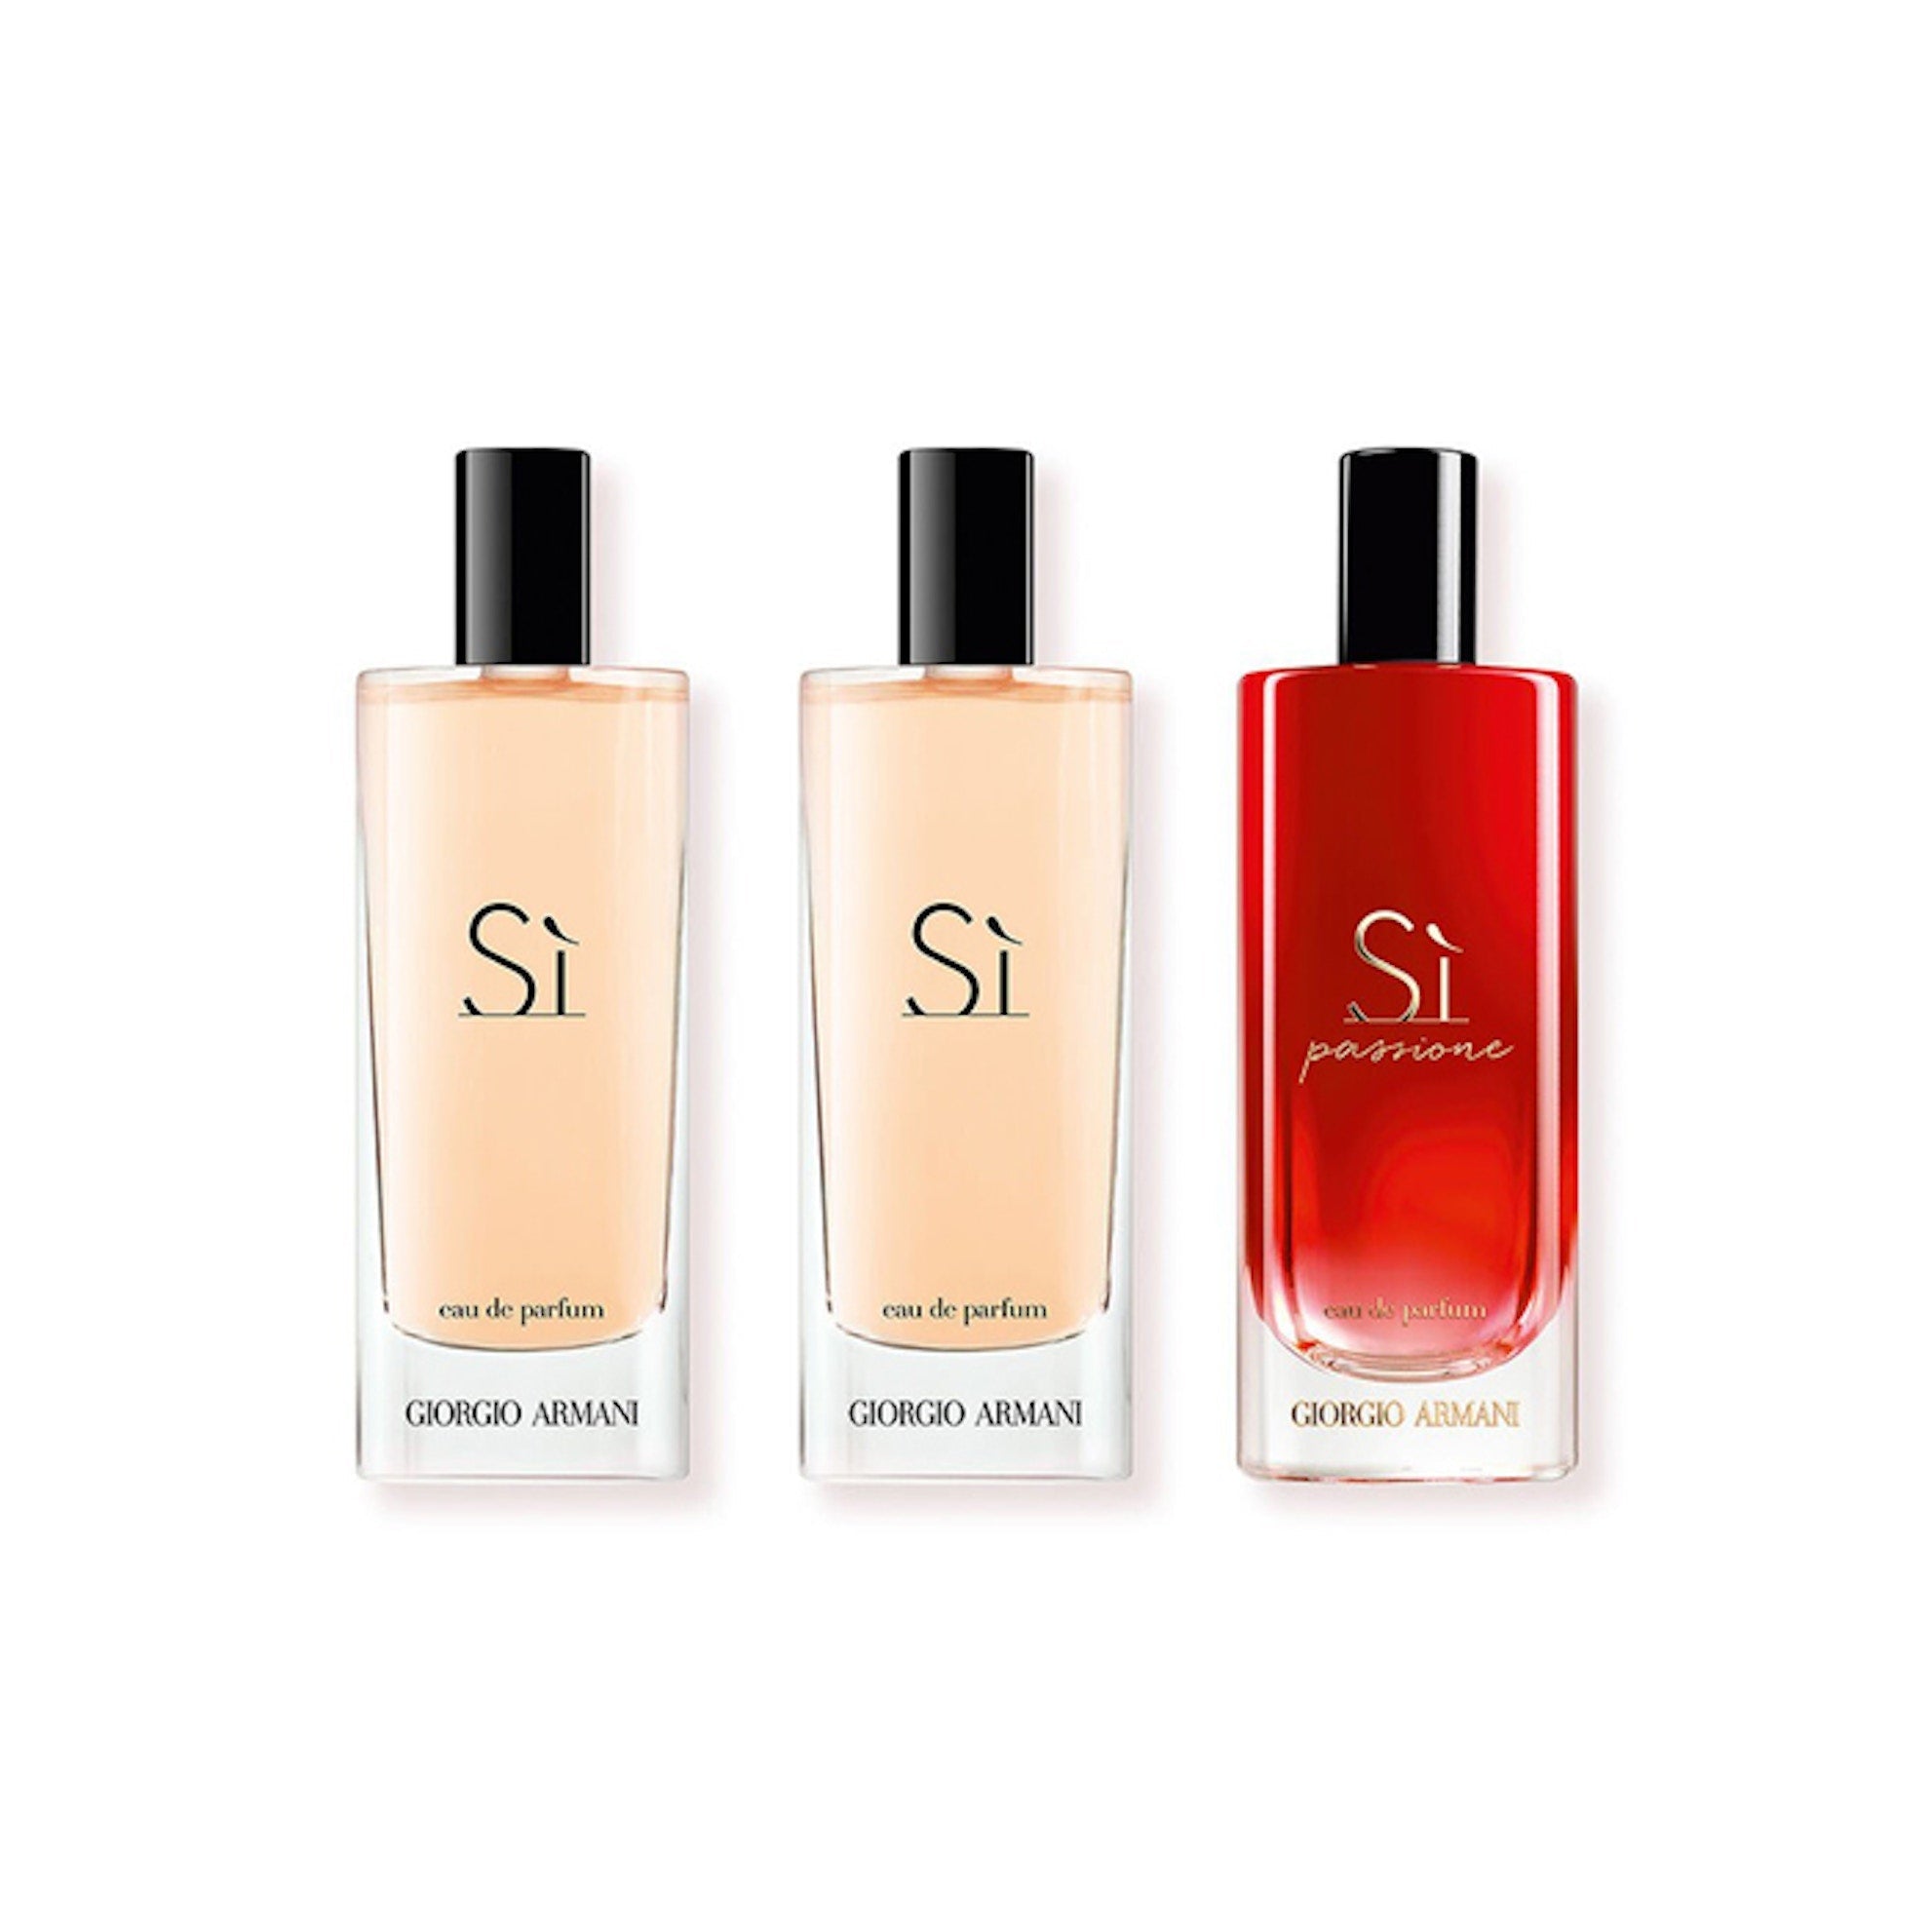 Giorgio Armani Si Discovery Set | My Perfume Shop Australia